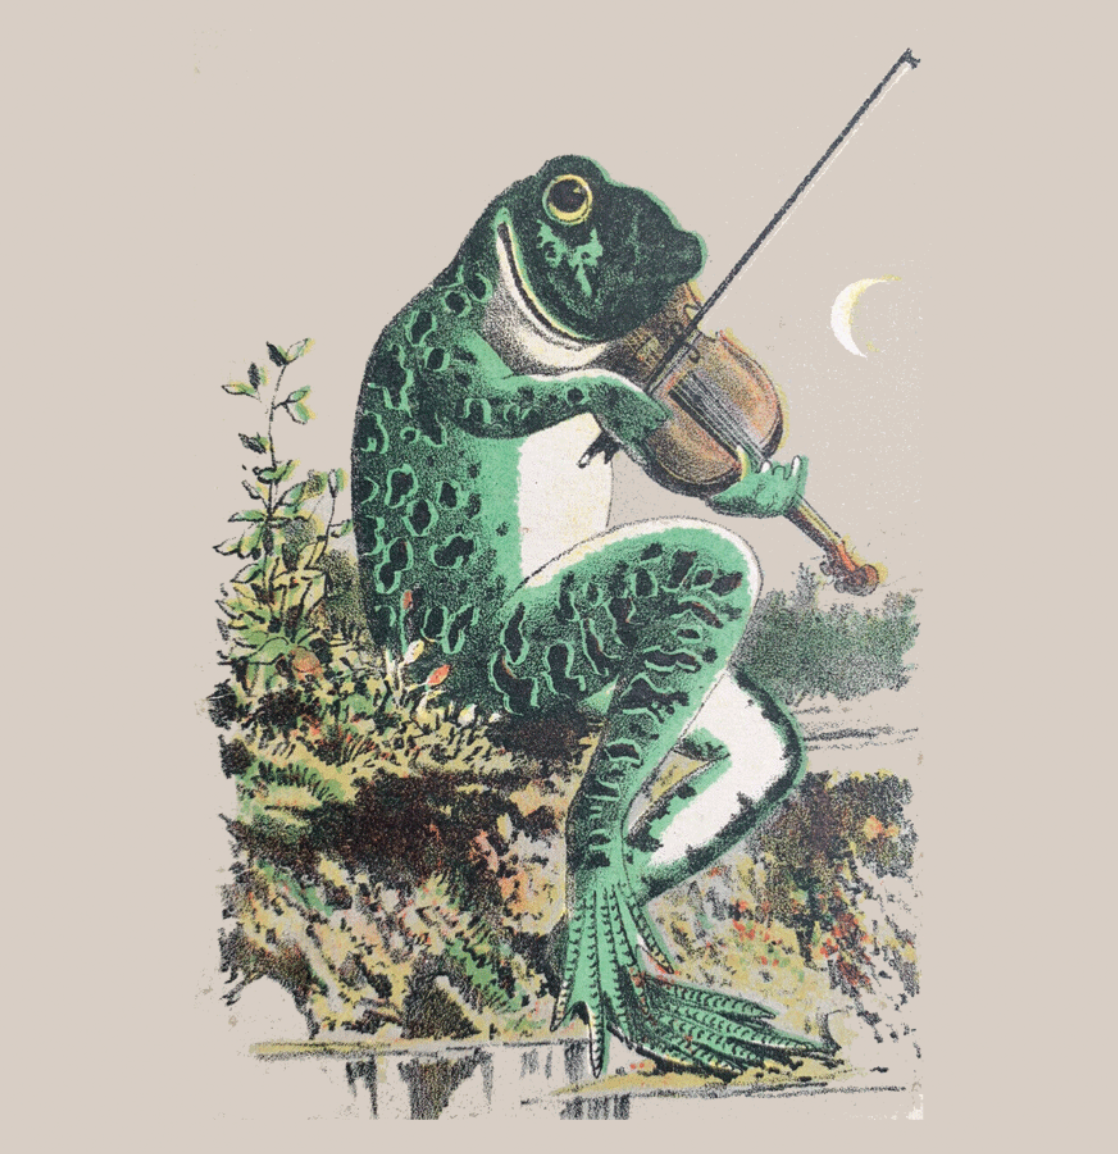 [SOLD OUT] SHAKESPEAREAN FROG "Shakesperean Frog" Vinyl LP